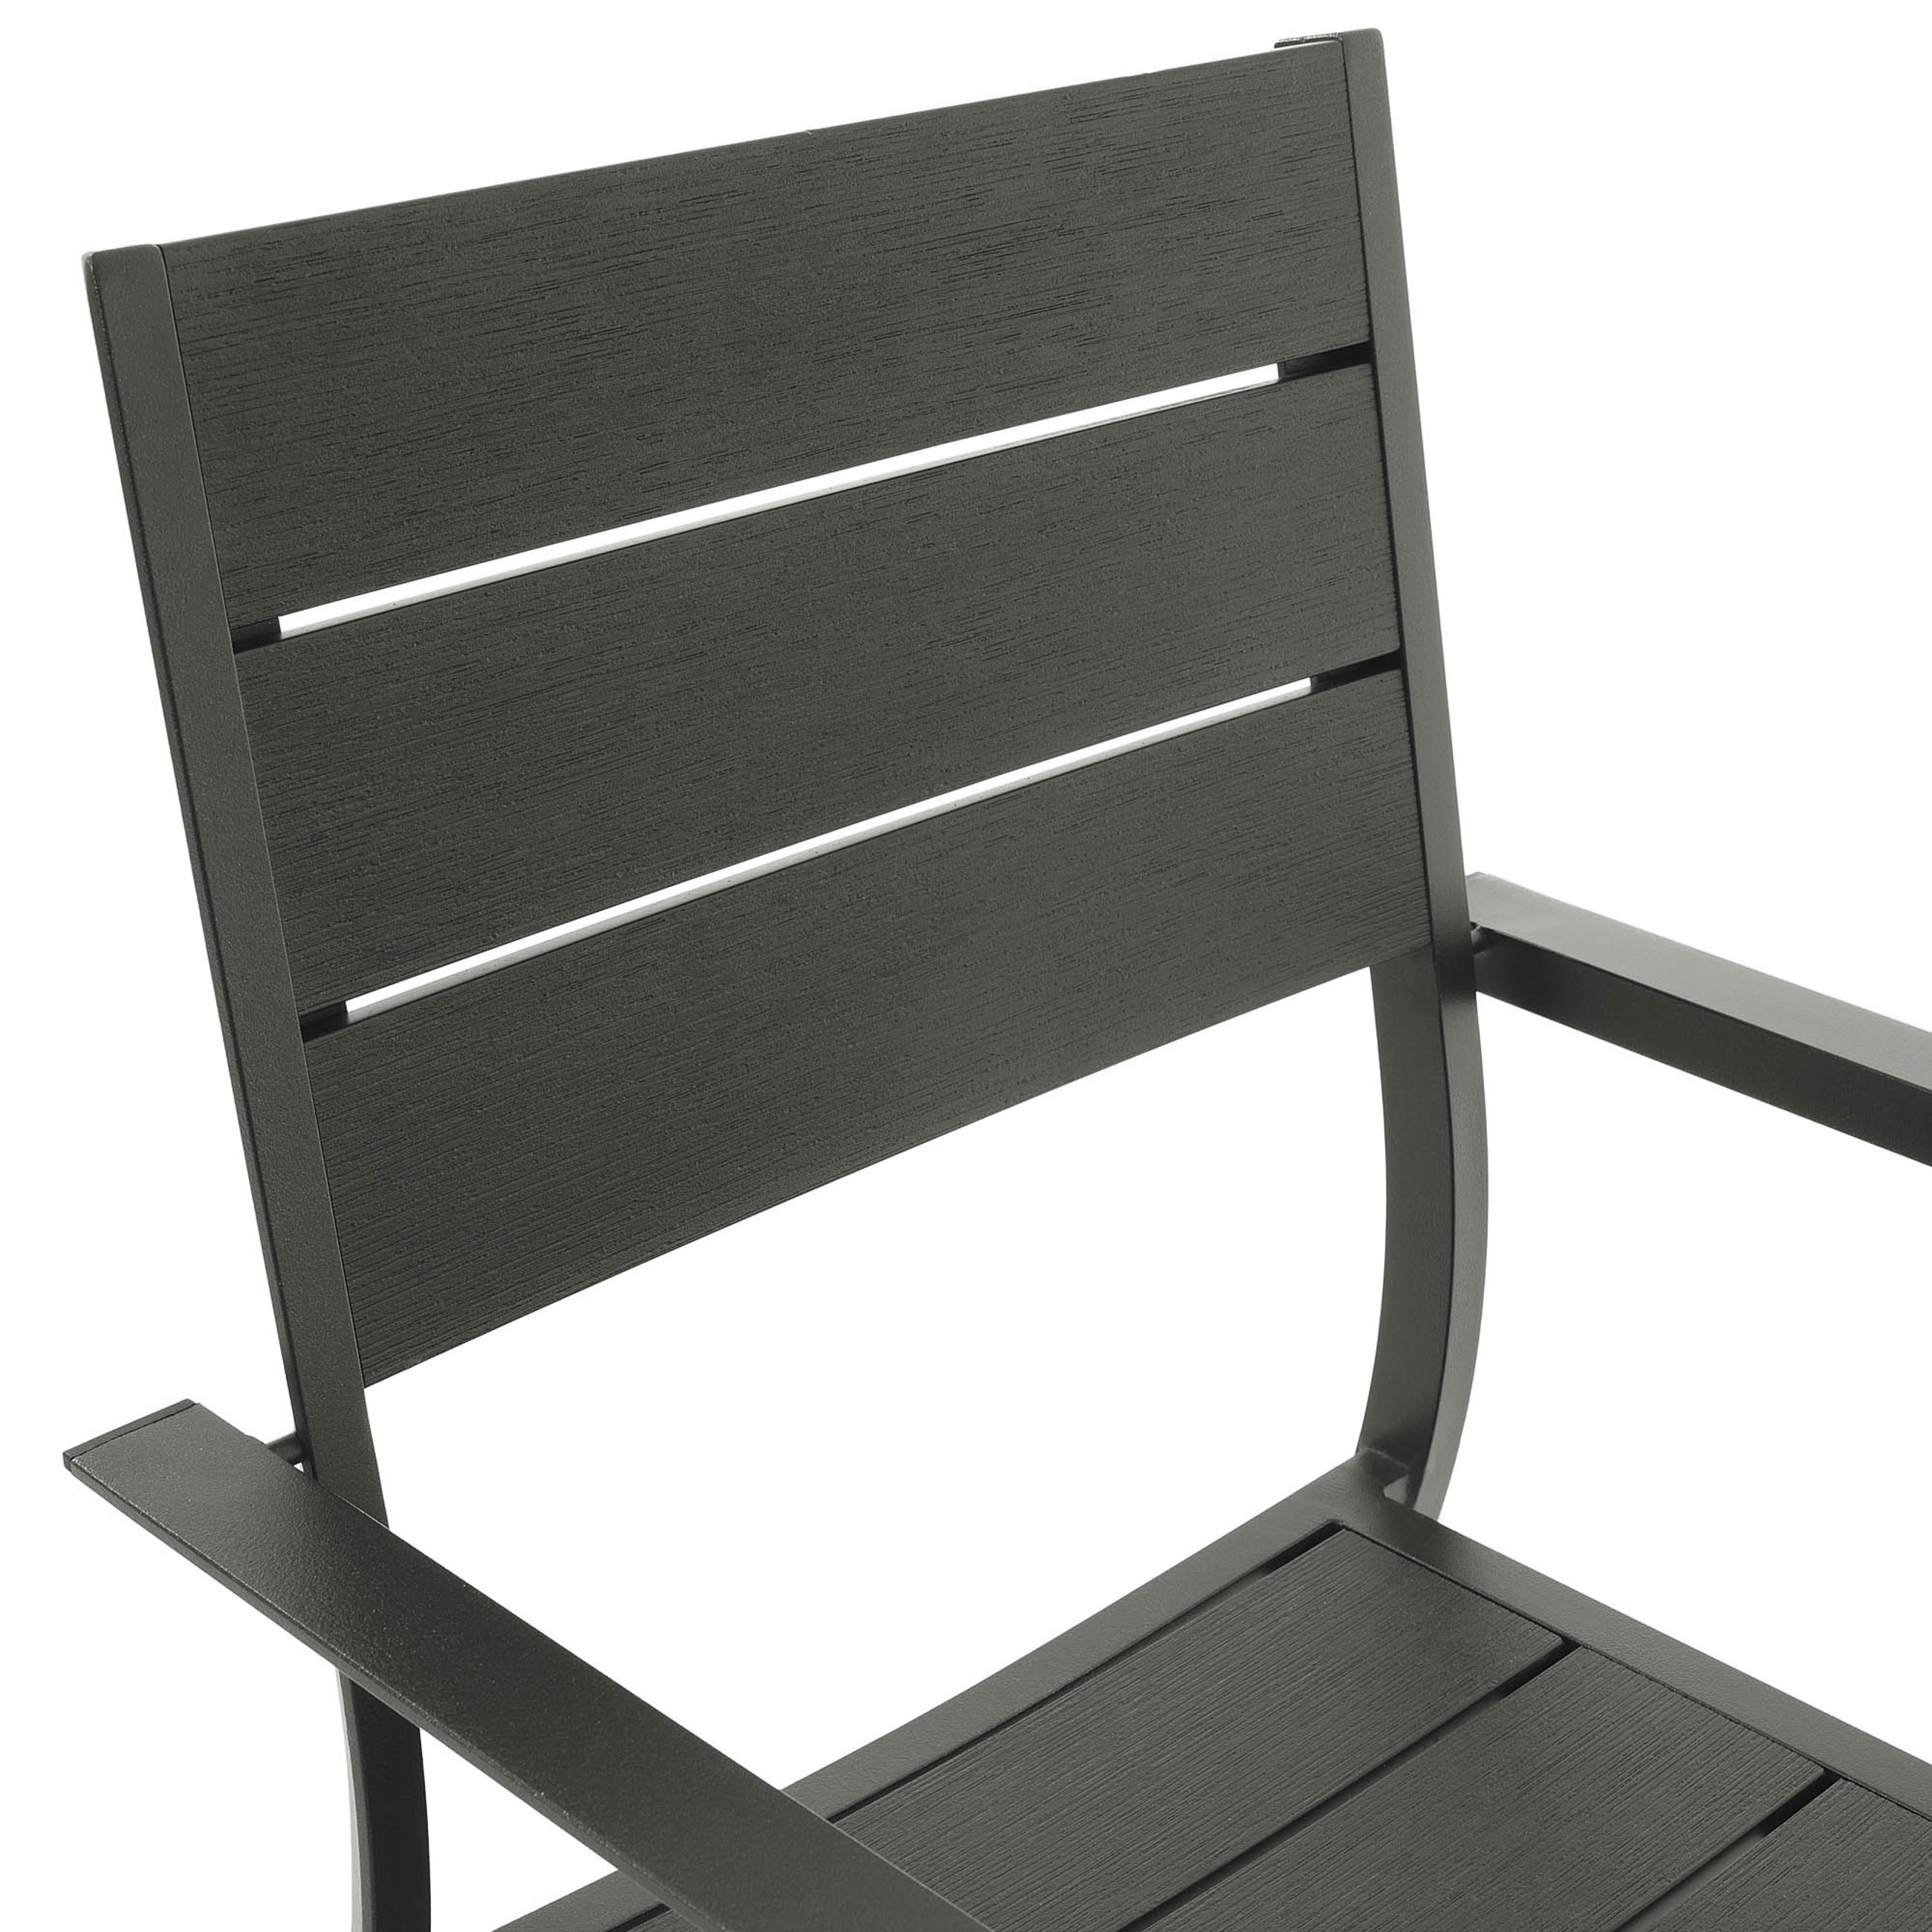 Siedzisko i oparcie krzesła Teri di volio wykonane z wysokiej jakości polywood w kolorze czarnym